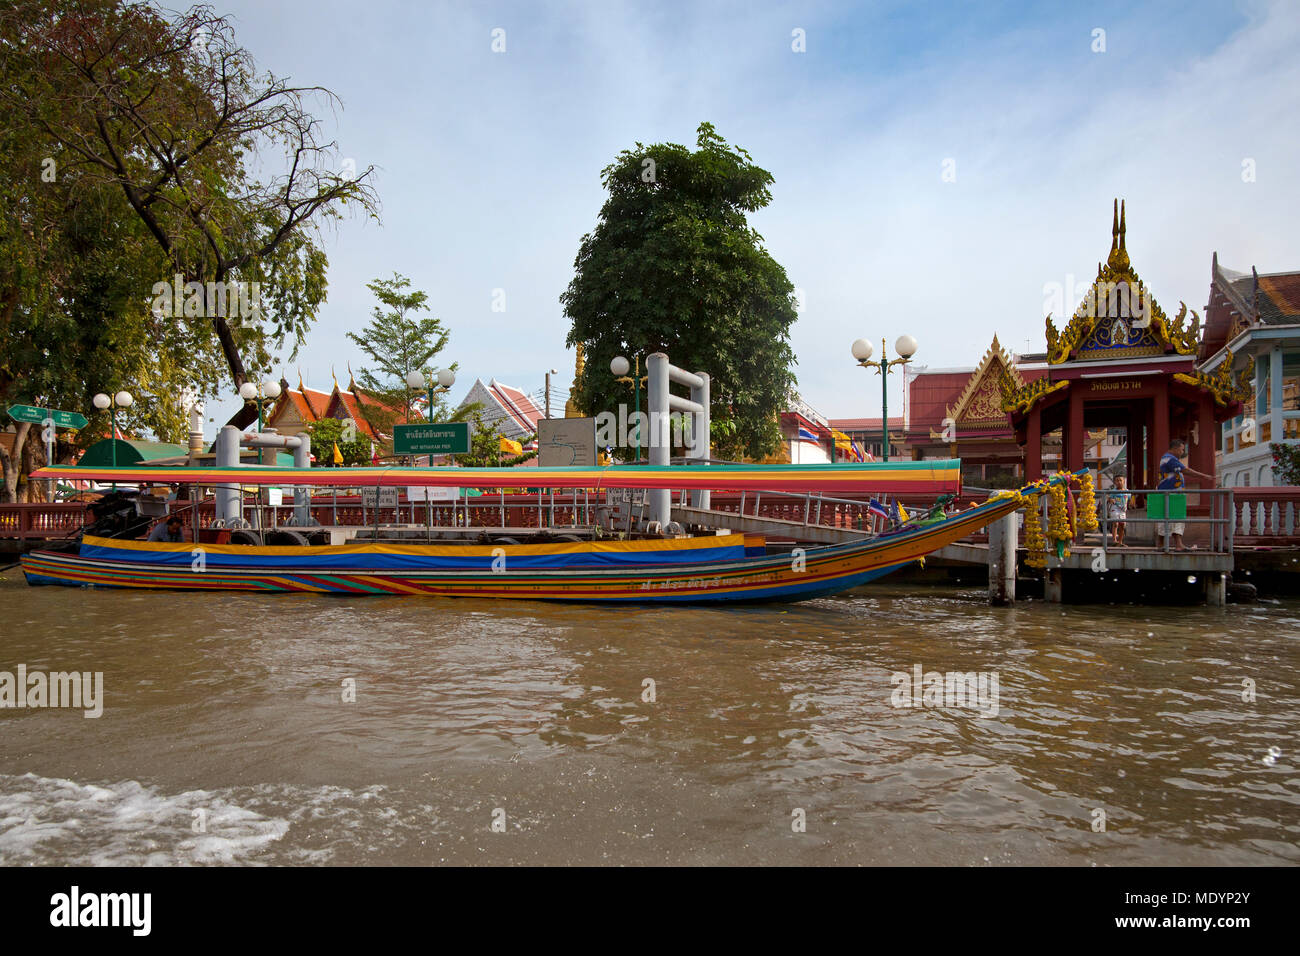 Bateau longtail thailandais sur canal à Thon buri, Bangkok, Thaïlande Banque D'Images